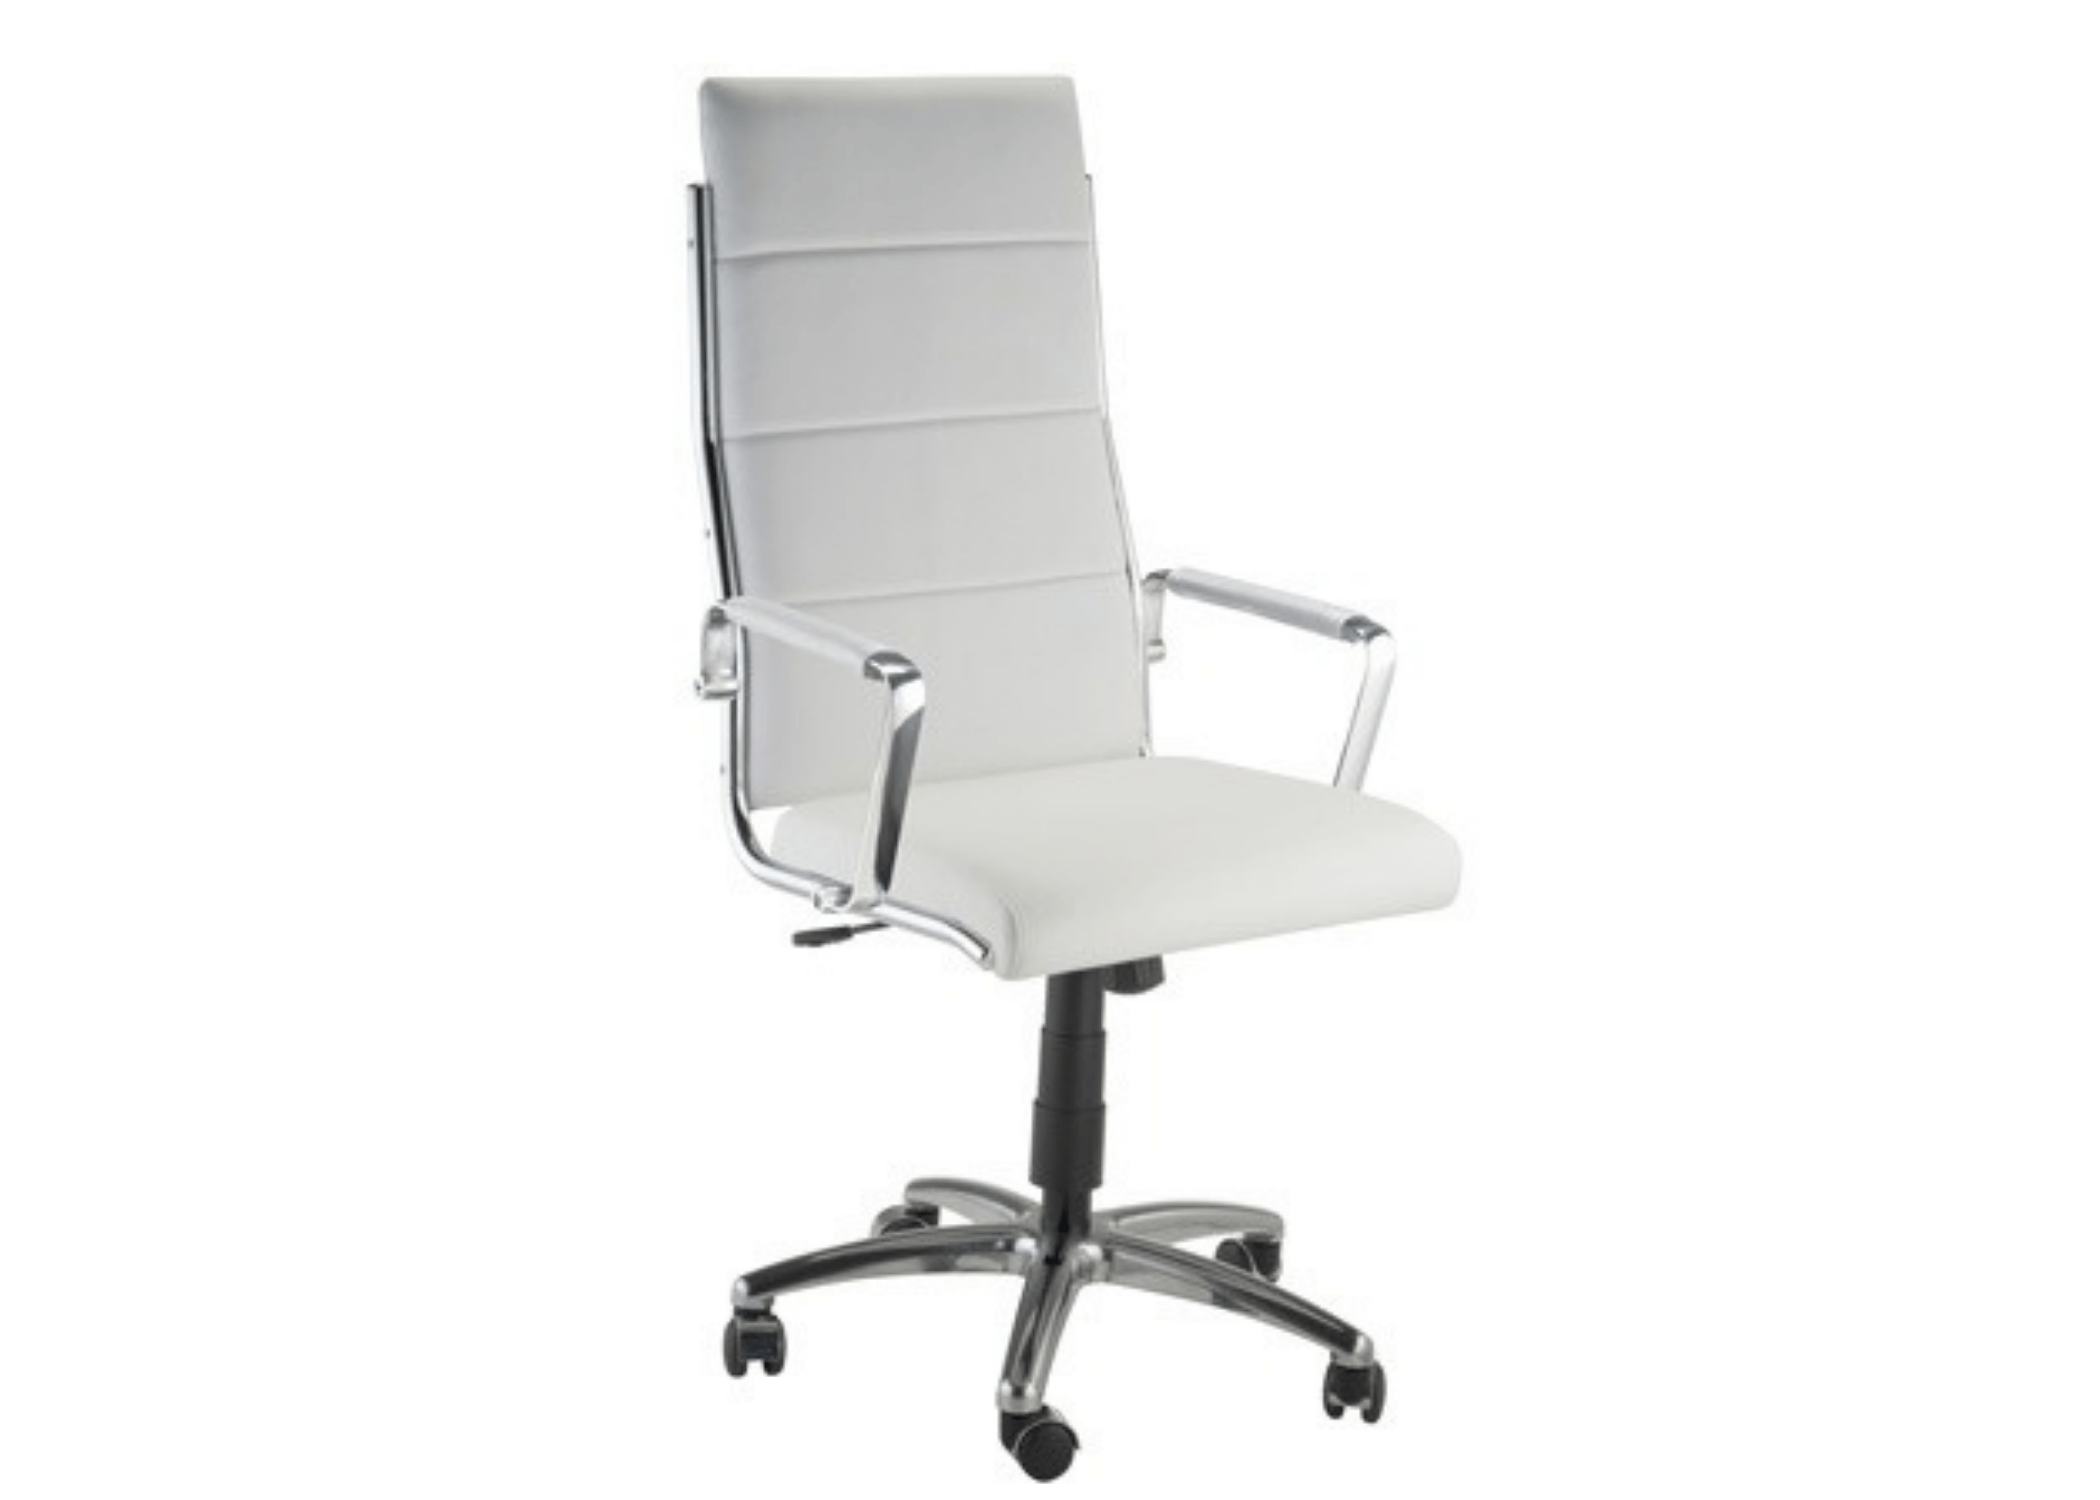 Estilo e funcionalidade: Cadeira Portugal I, onde o design contemporâneo encontra o conforto ergonômico.